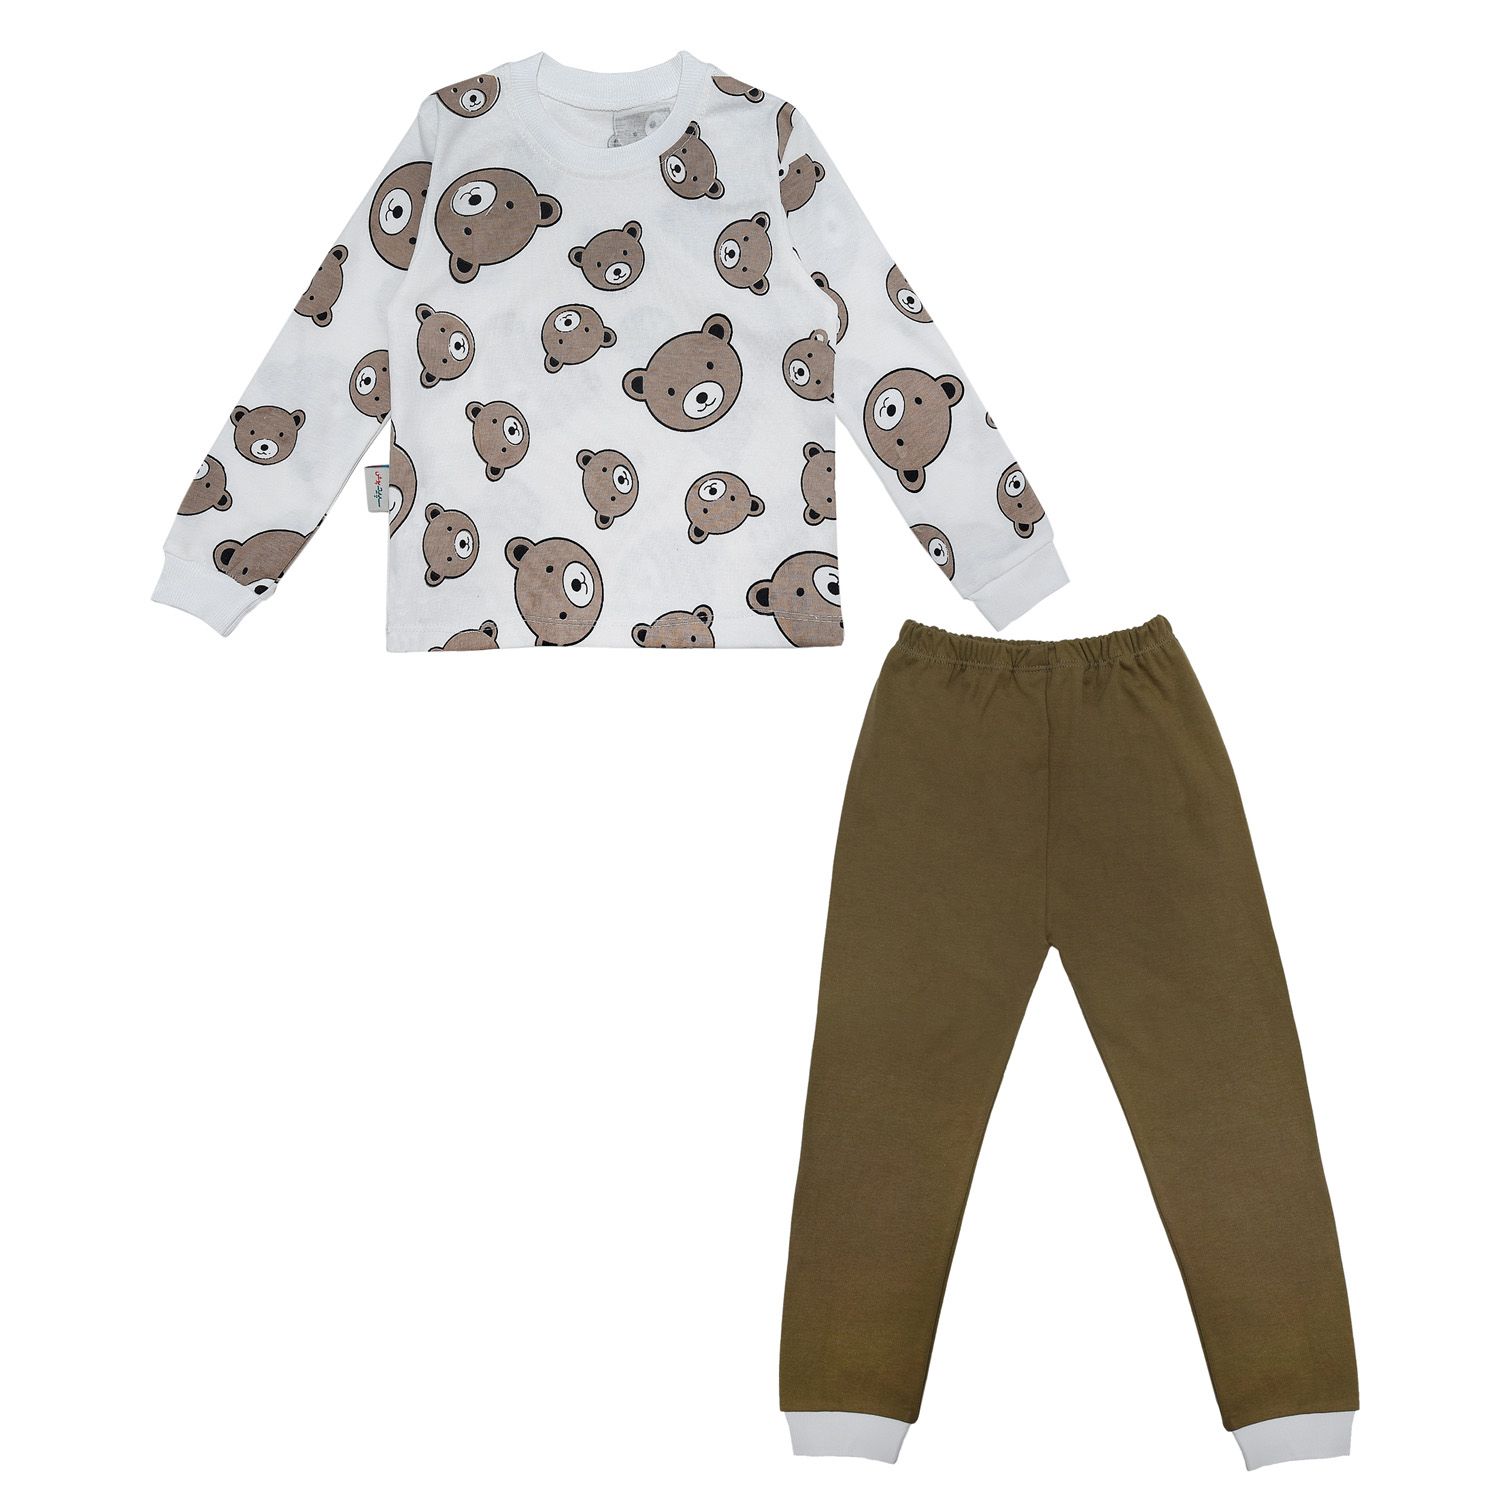 ست تی شرت آستین بلند و شلوار بچگانه سپیدپوش مدل خرس شکلاتی کد 1402753 -  - 1